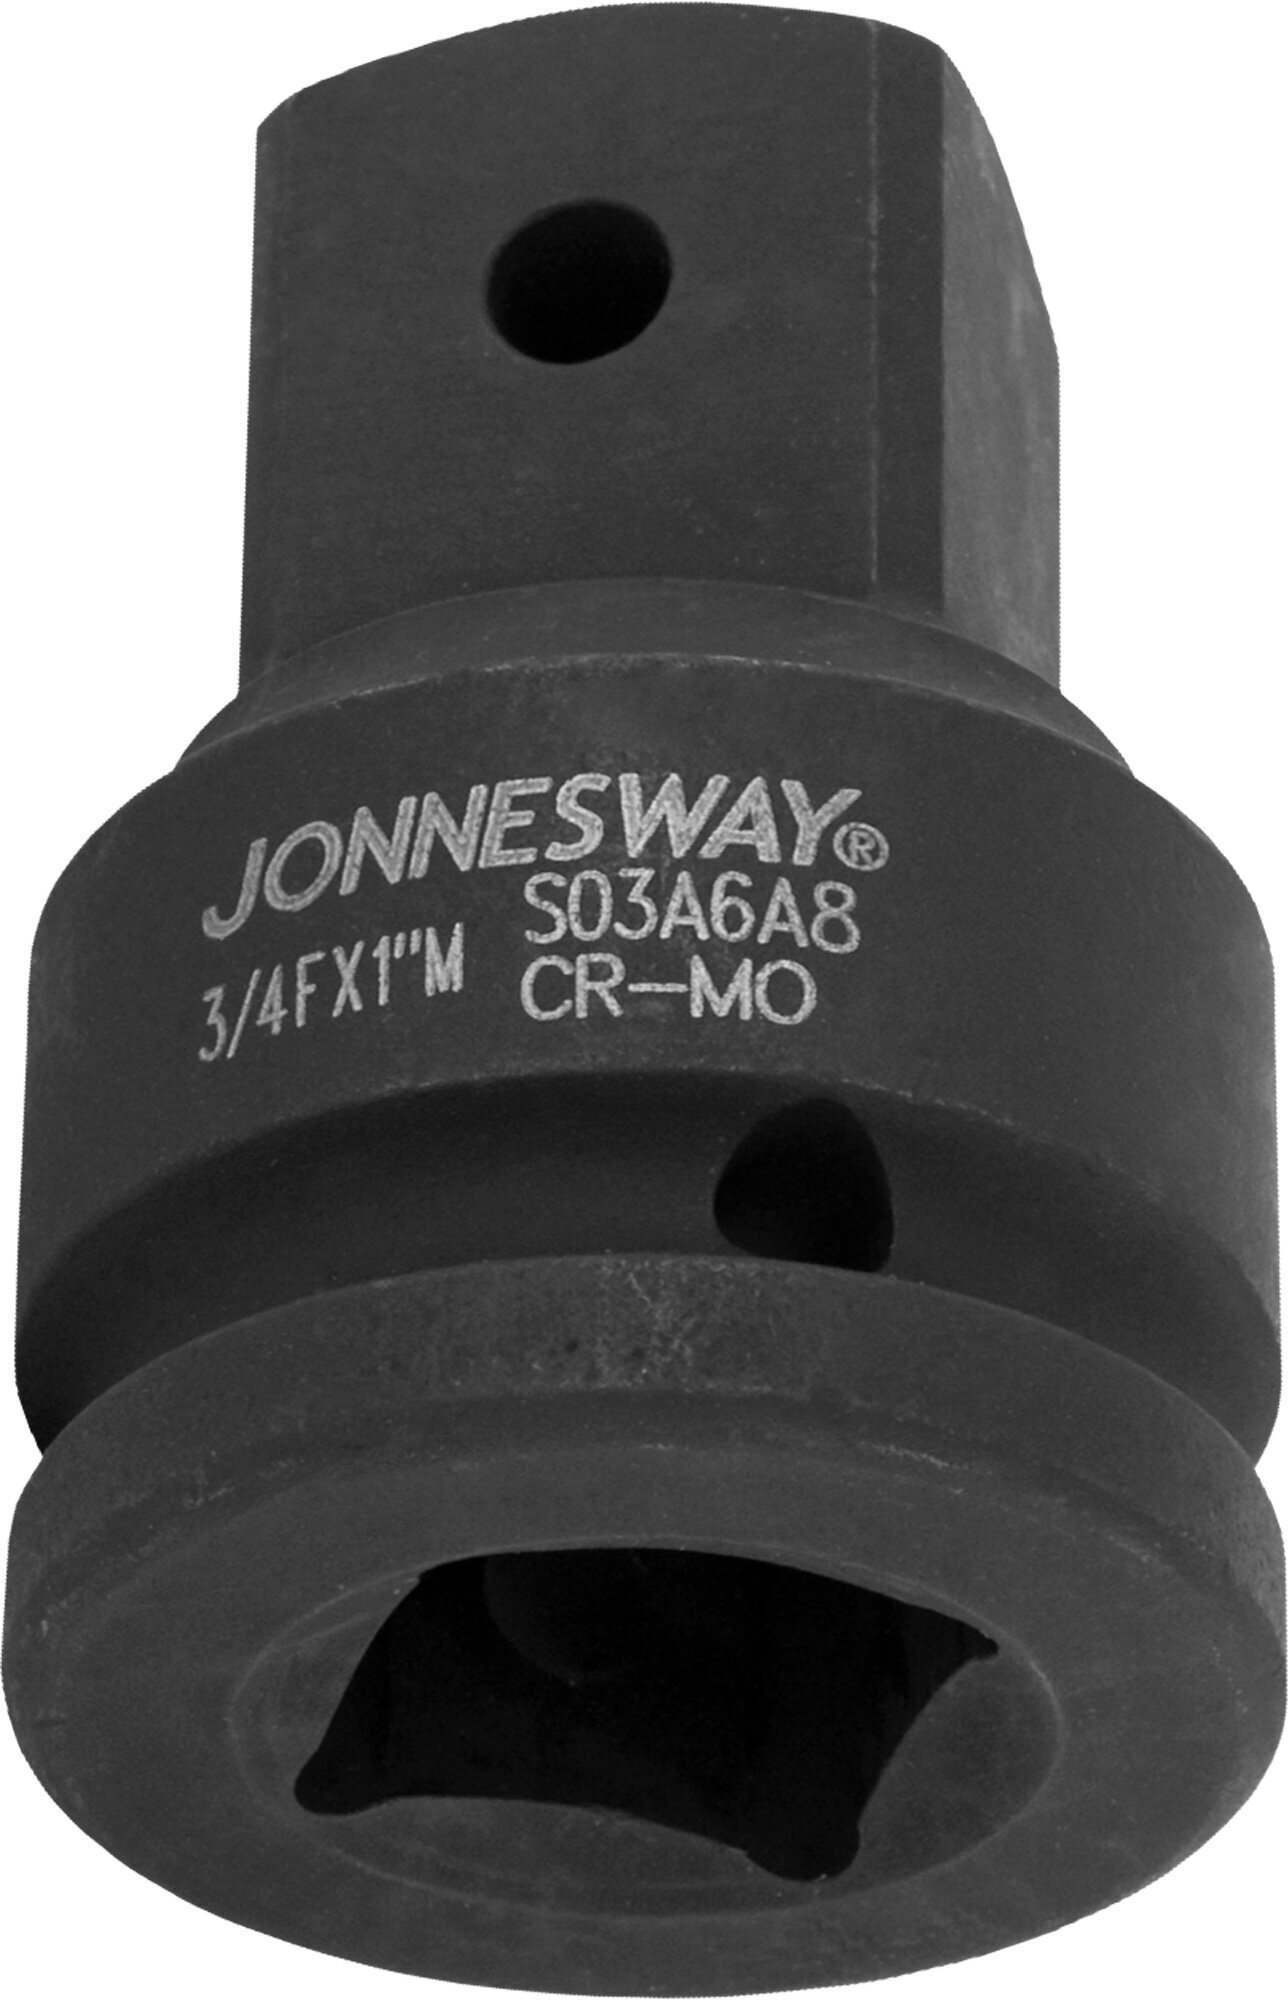 Адаптер-переходник Jonnesway для ударного инструмента F-3/4", M–1", S03A6A8, - фото №3